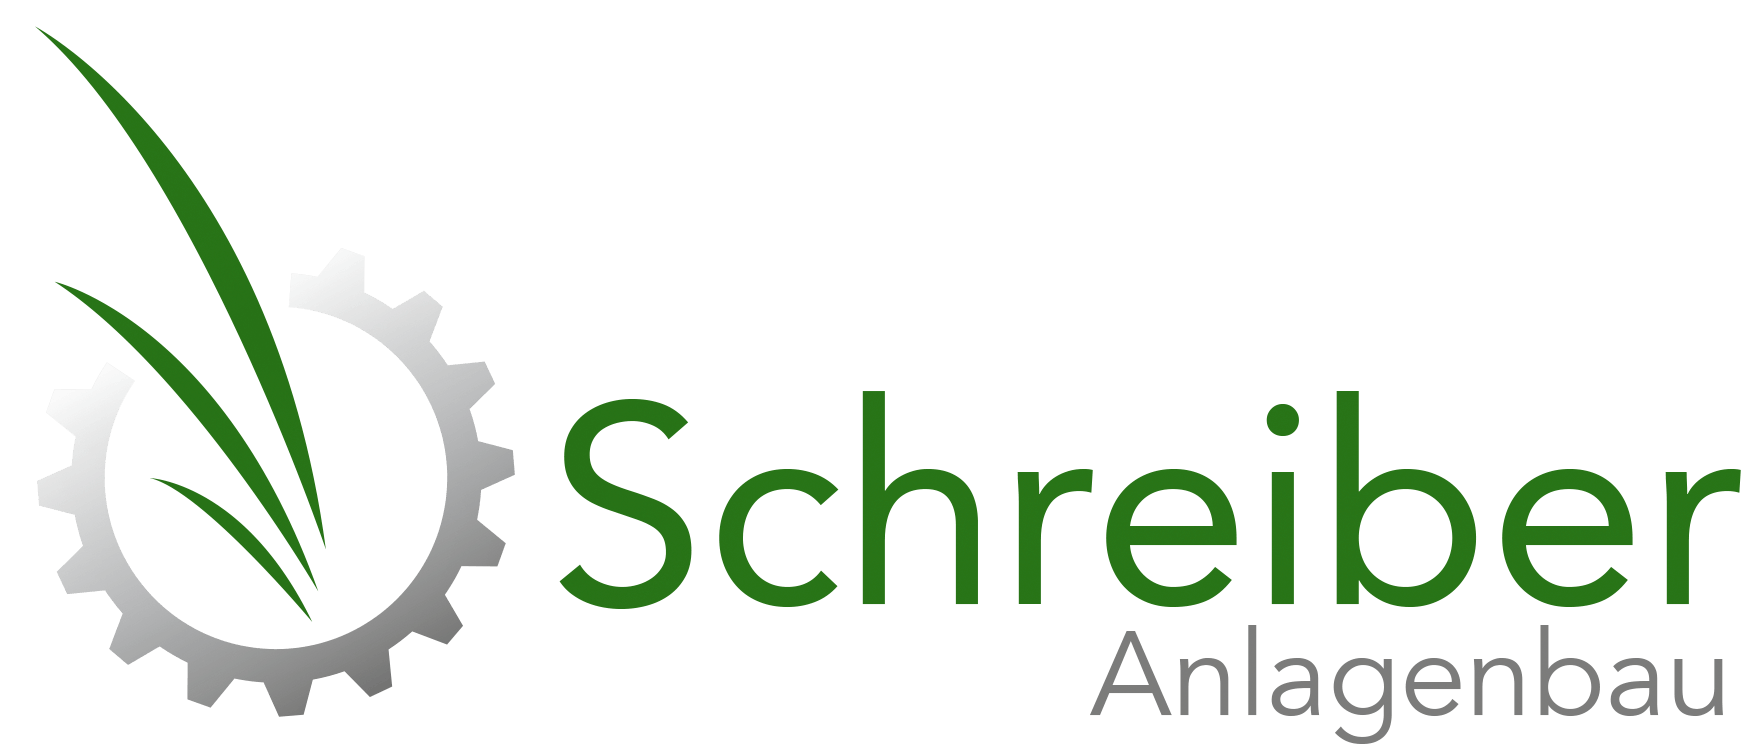 Schreiber Anlagenbau GmbH